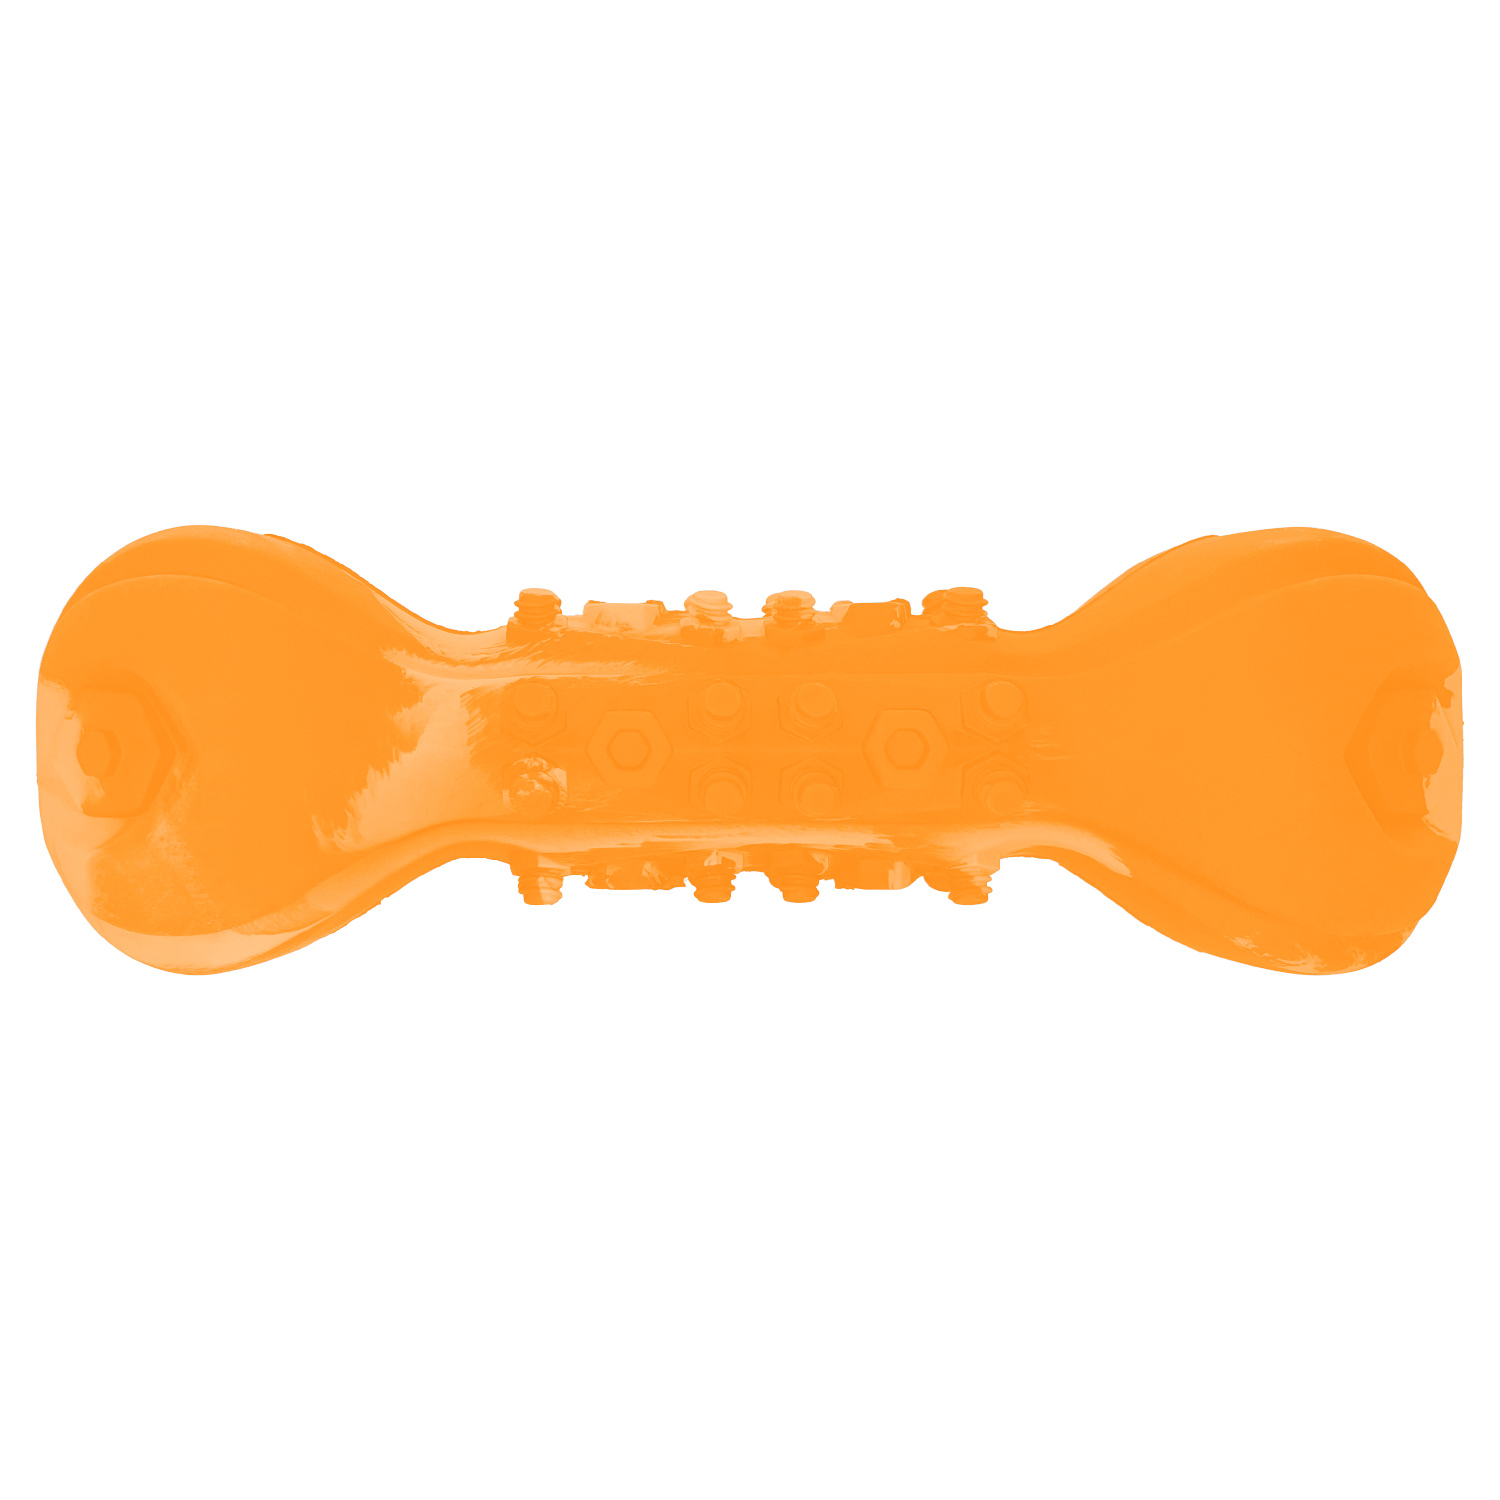 Mr.Kranch Mr.Kranch игрушка Гантель дентальная для собак с ароматом бекона, оранжевая, с пищалкой (22 см) mr kranch mr kranch игрушка палочка для собак с ароматом бекона оранжевая с пищалкой 16 см